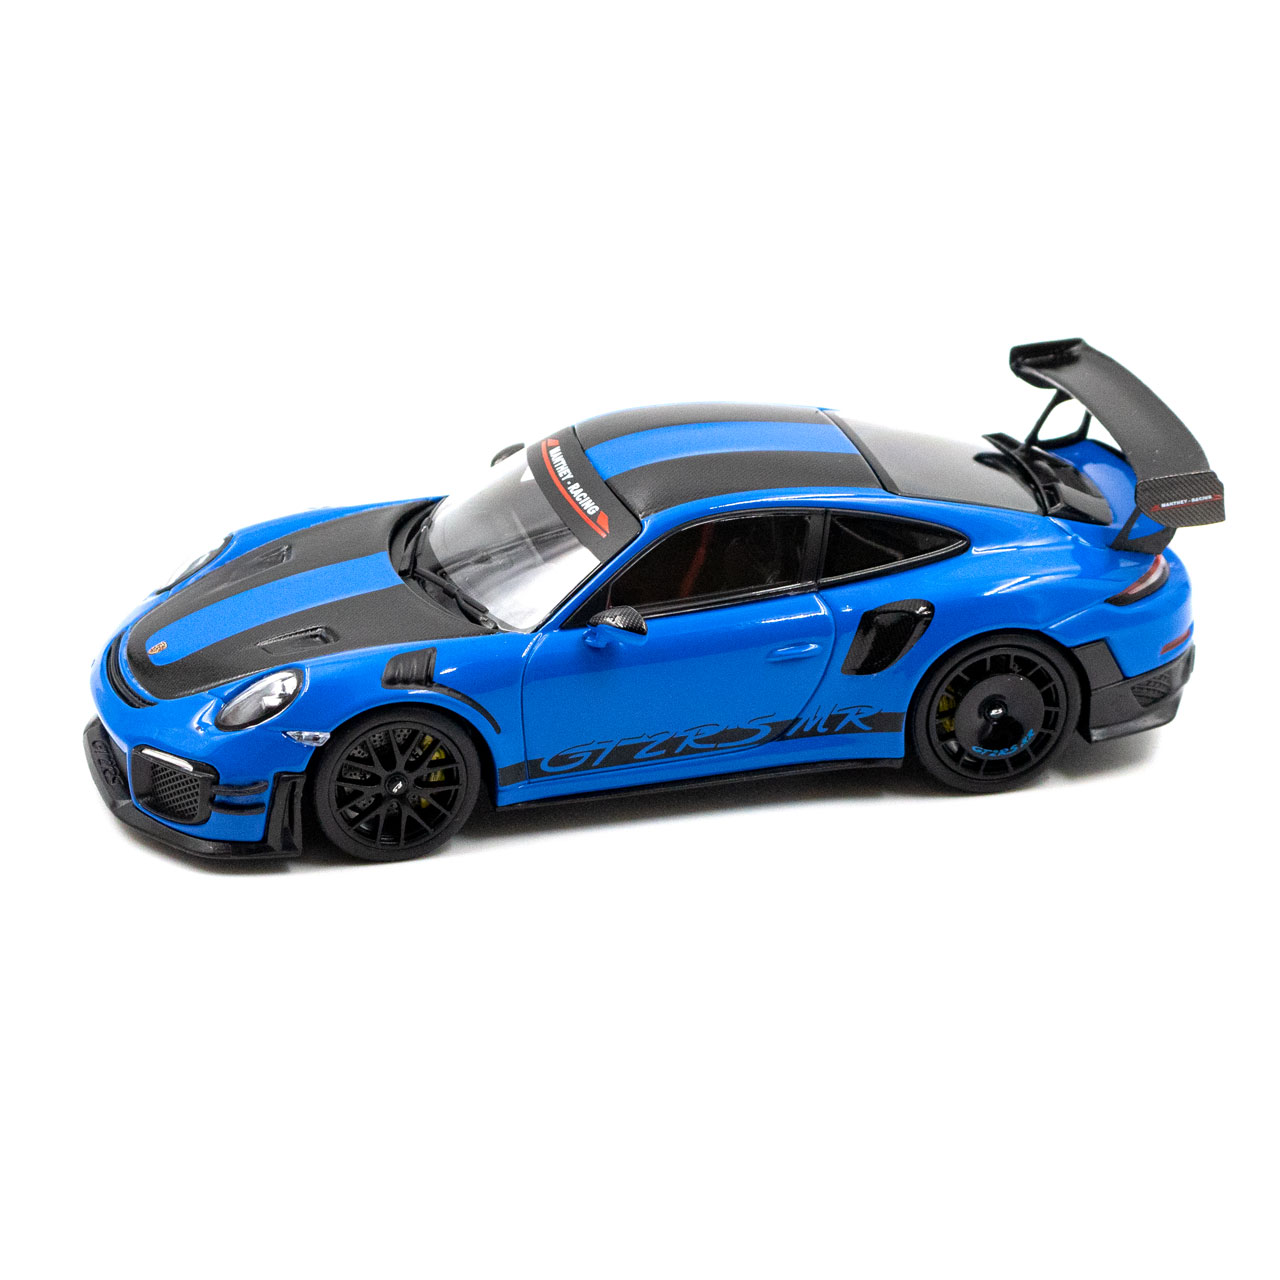 Manthey-Racing Porsche 911 GT2 RS MR 1:43 azul Edición Coleccionista